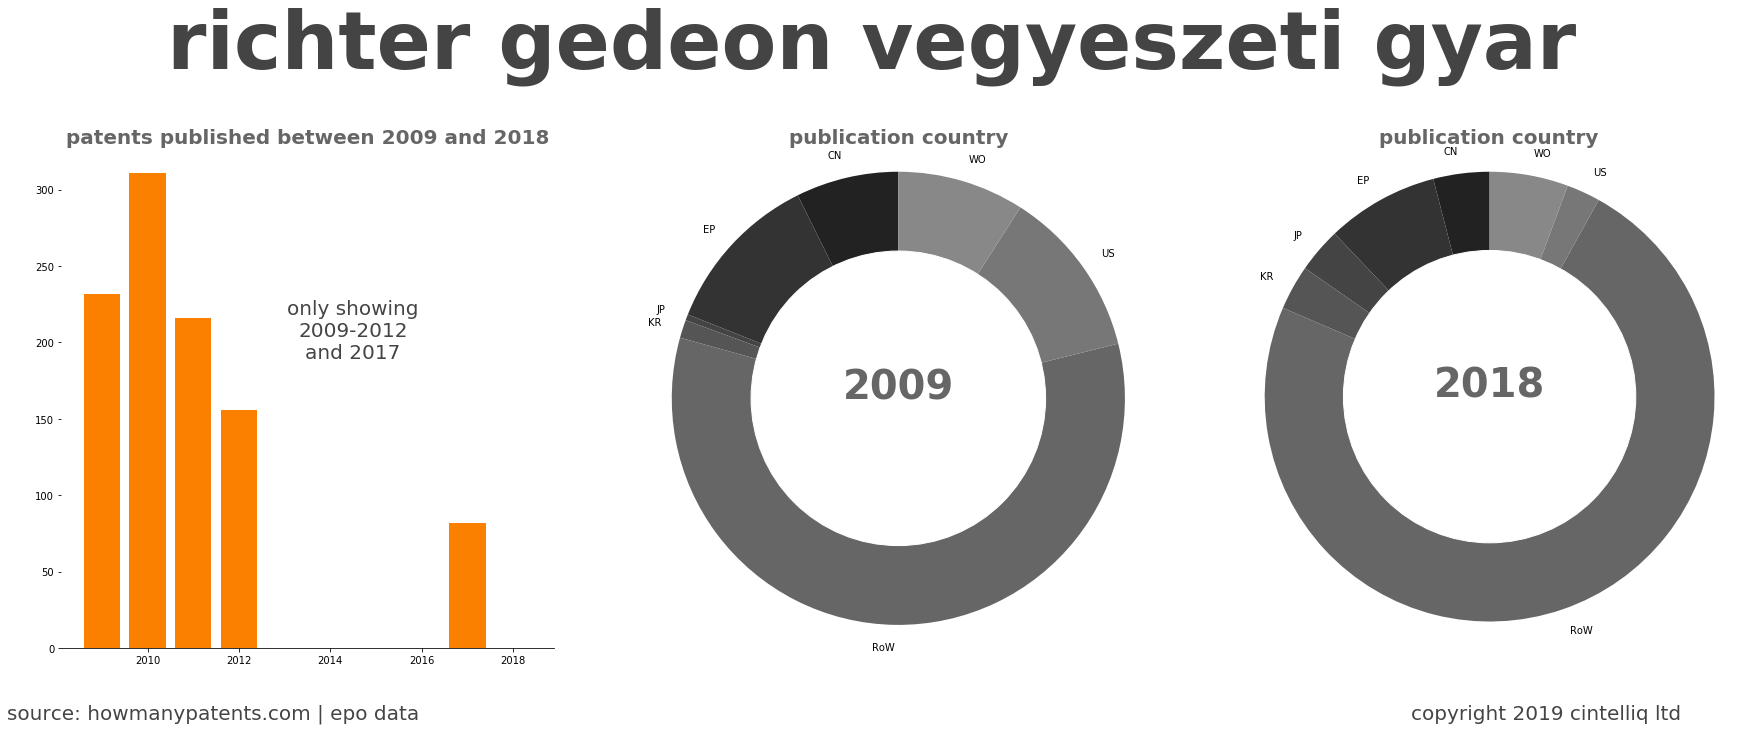 summary of patents for Richter Gedeon Vegyeszeti Gyar